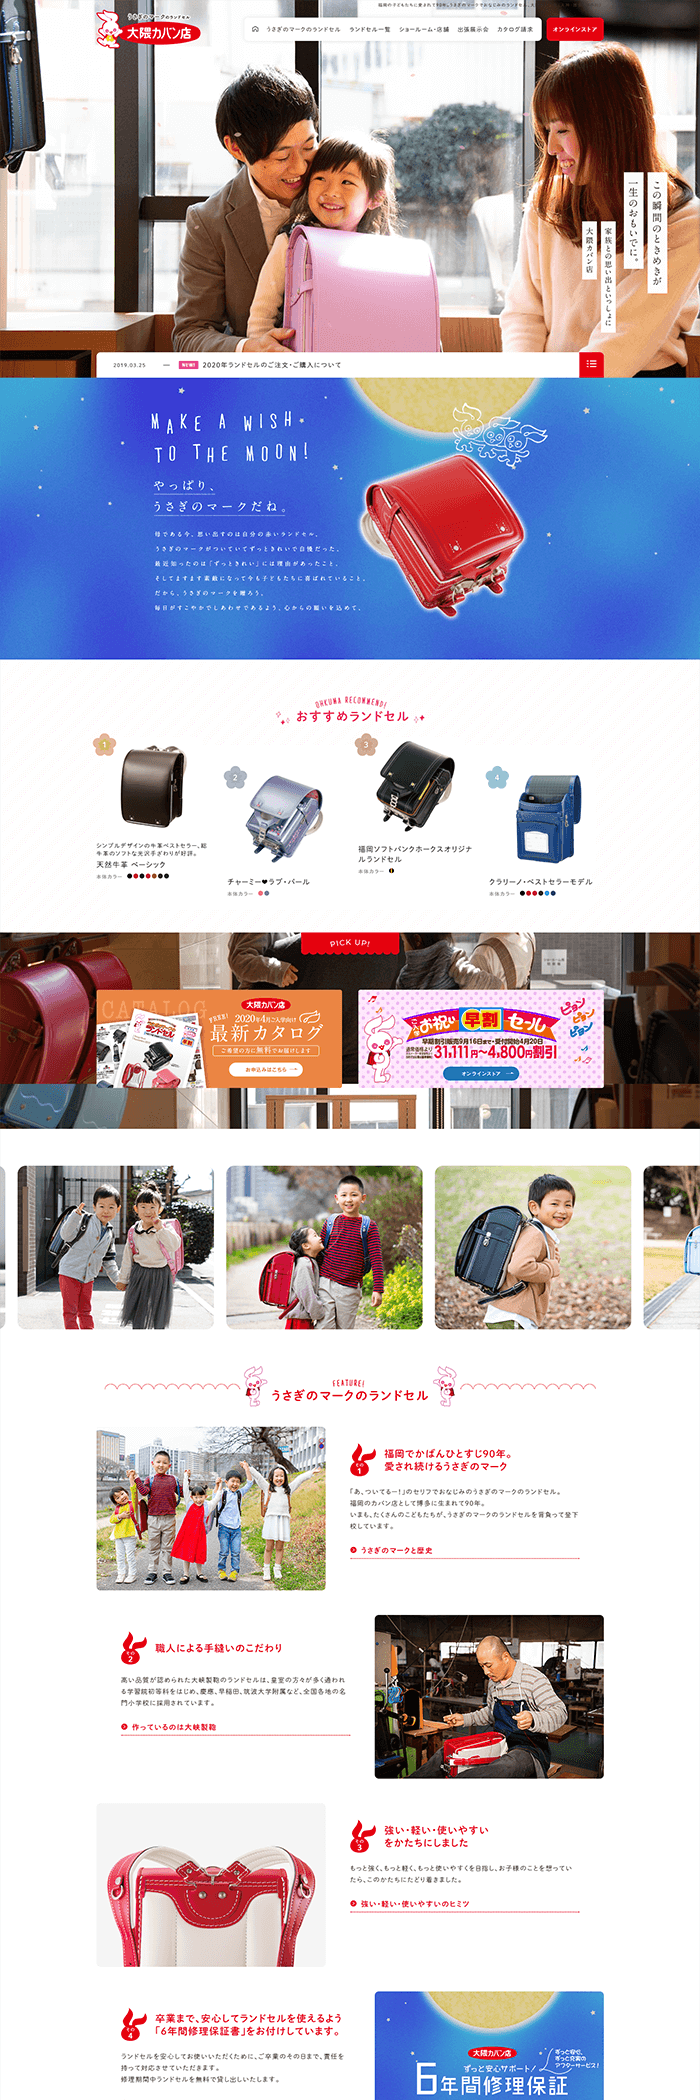 大隈カバン店様「うさぎのマークのランドセル」ホームページ制作実績 デスクトップイメージ